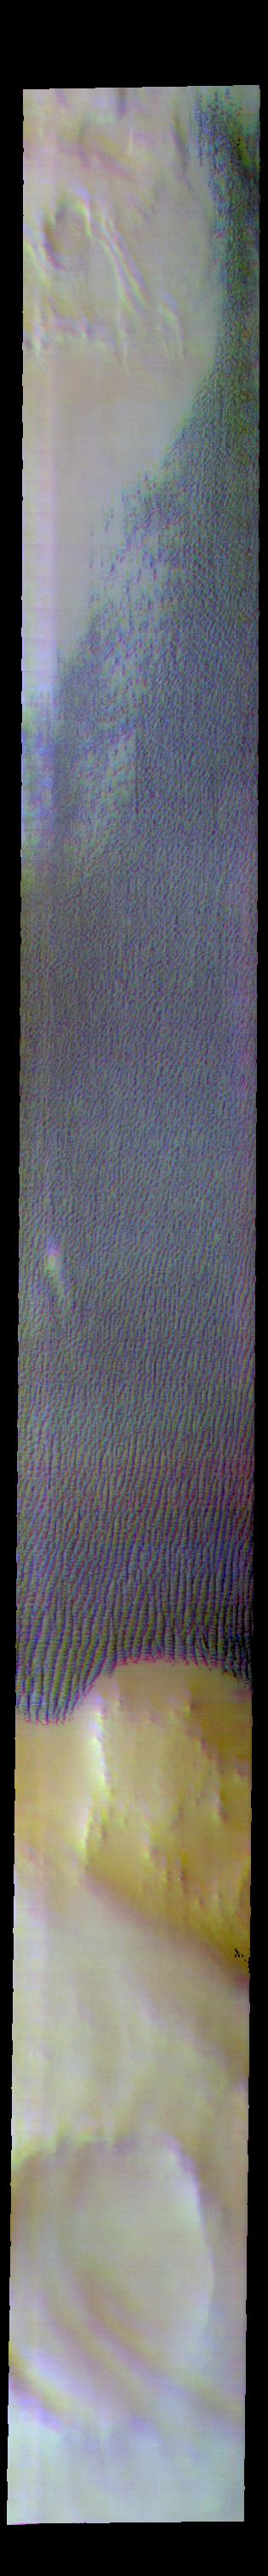 PIA22717: Escorial Crater - False Color